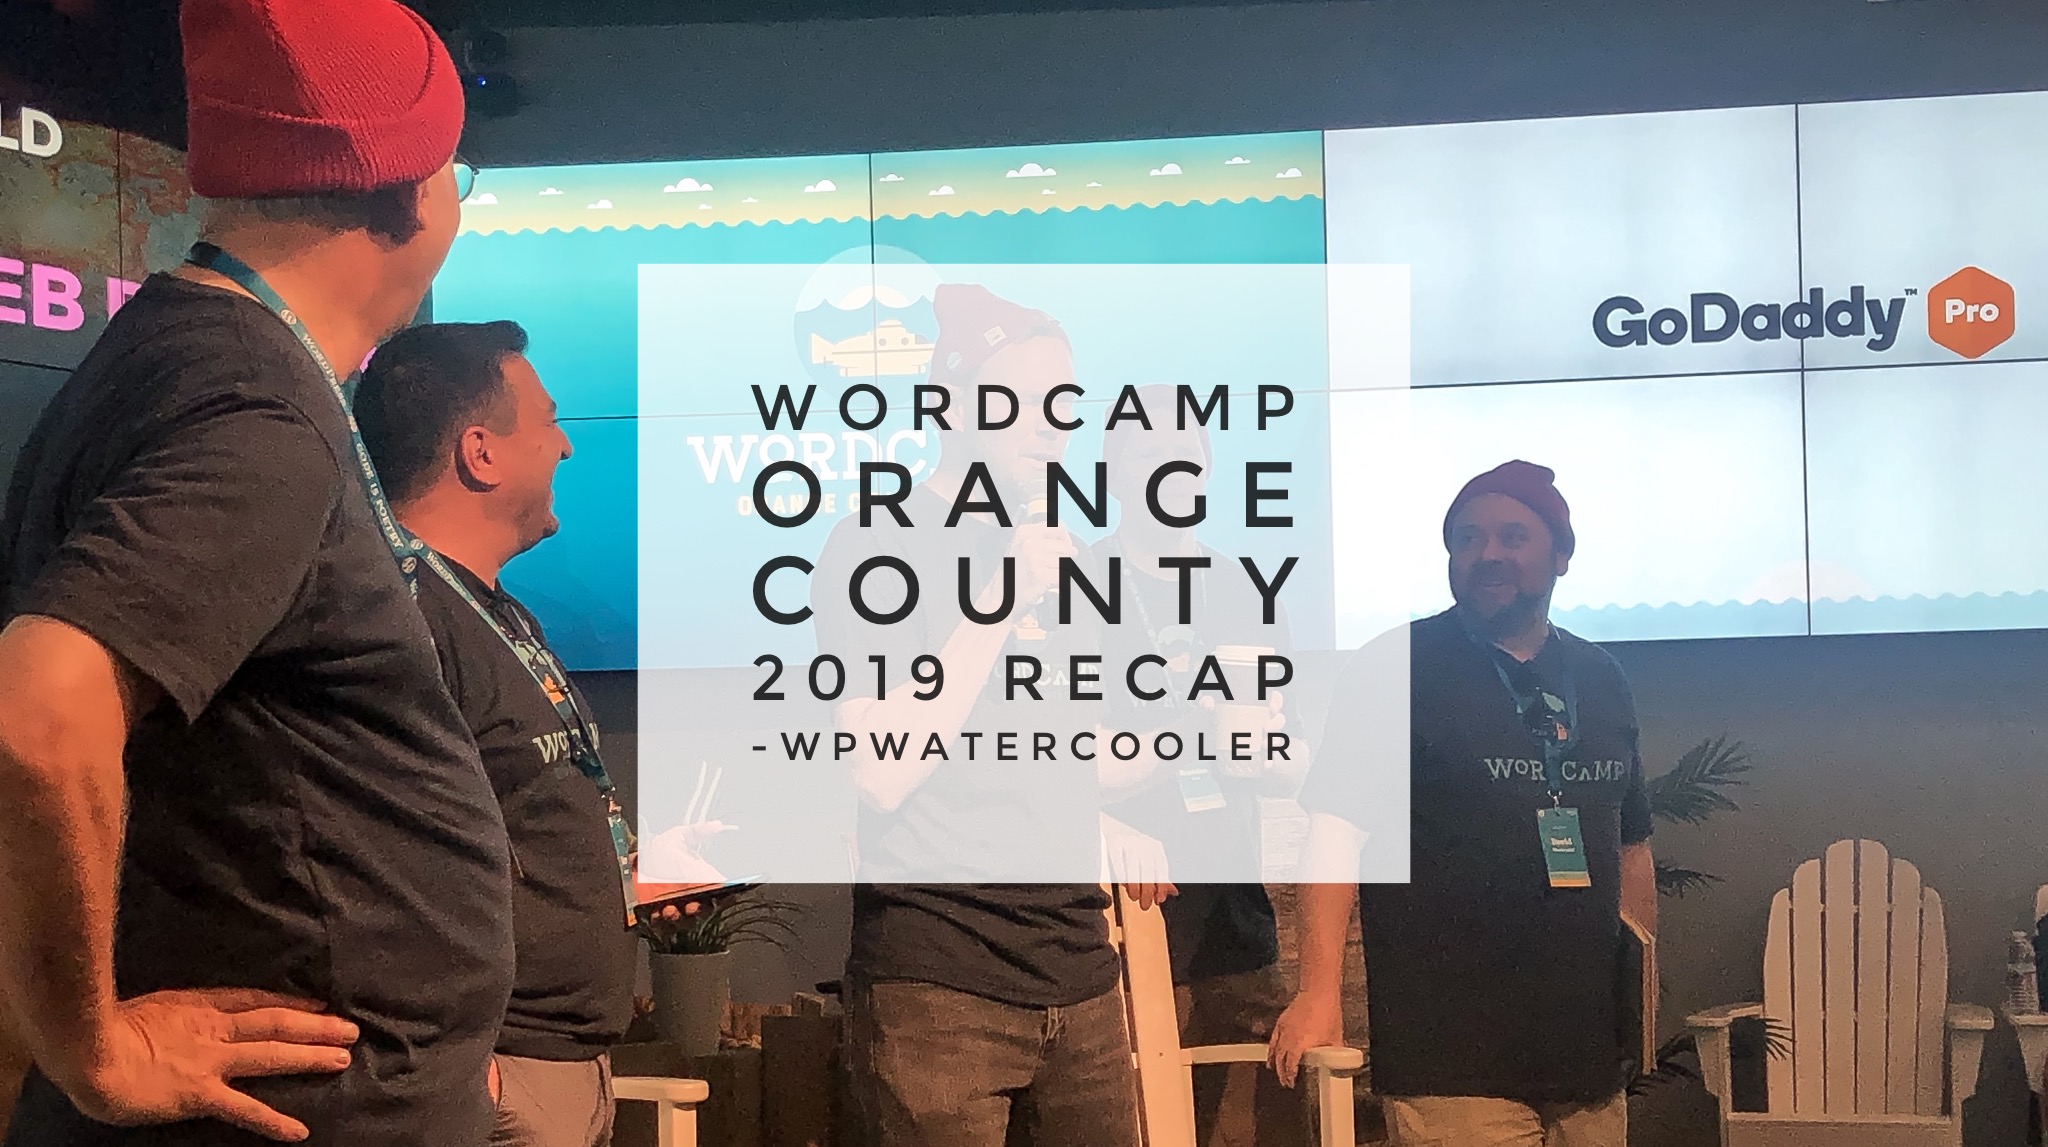 EP320 – WordCamp Orange County 2019 Recap #WCOC